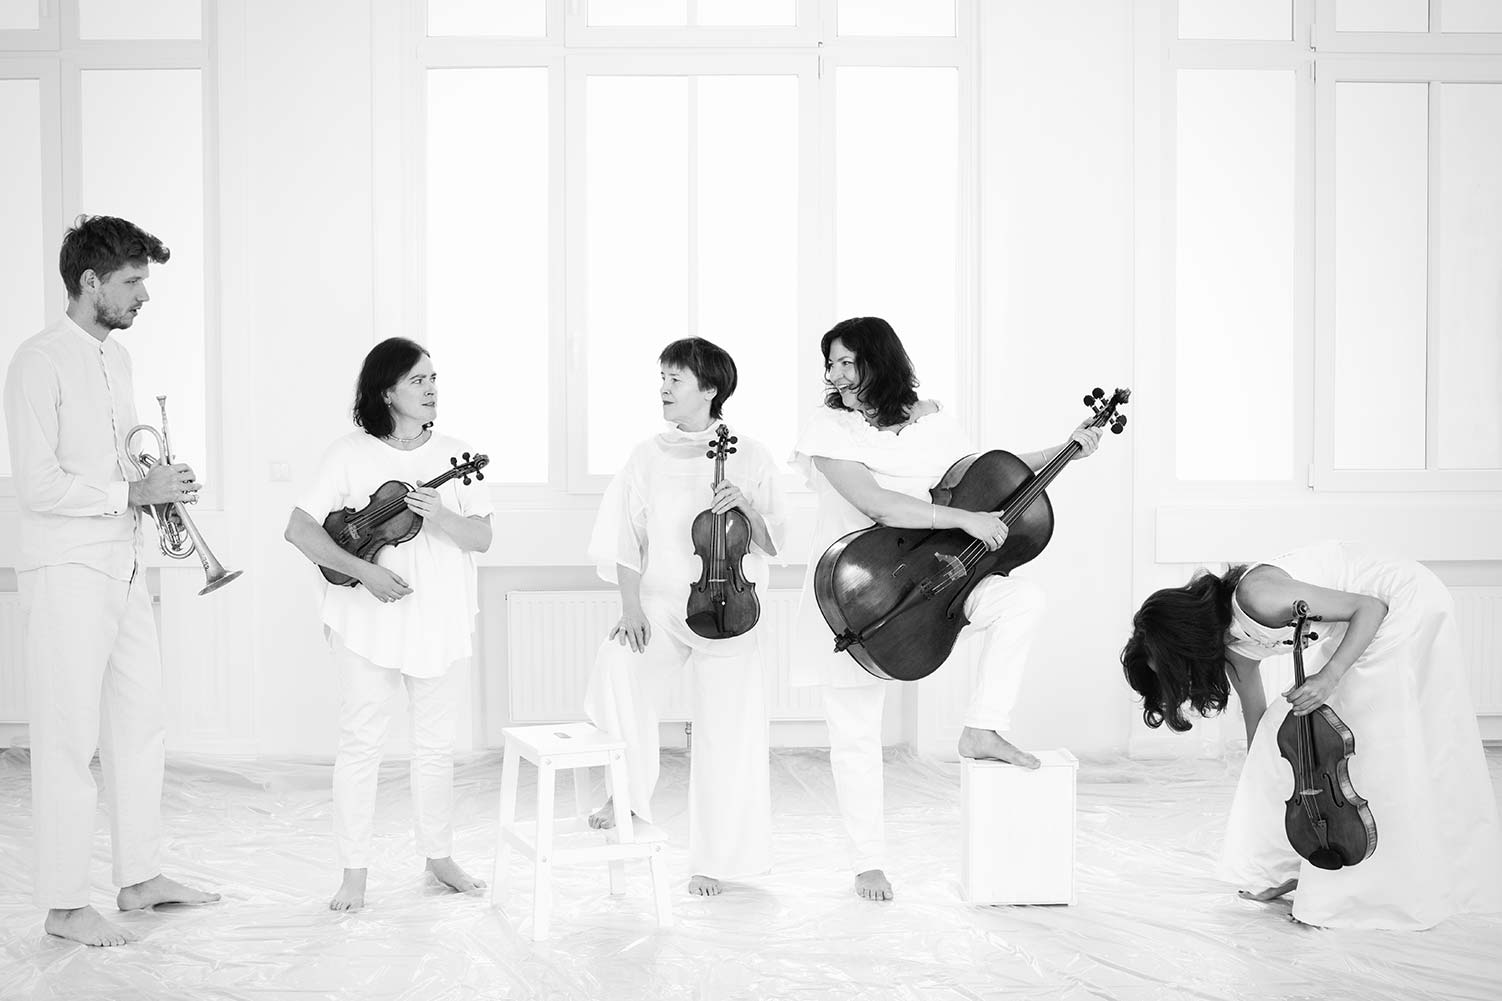 Zoechbauer Koehne Quartett